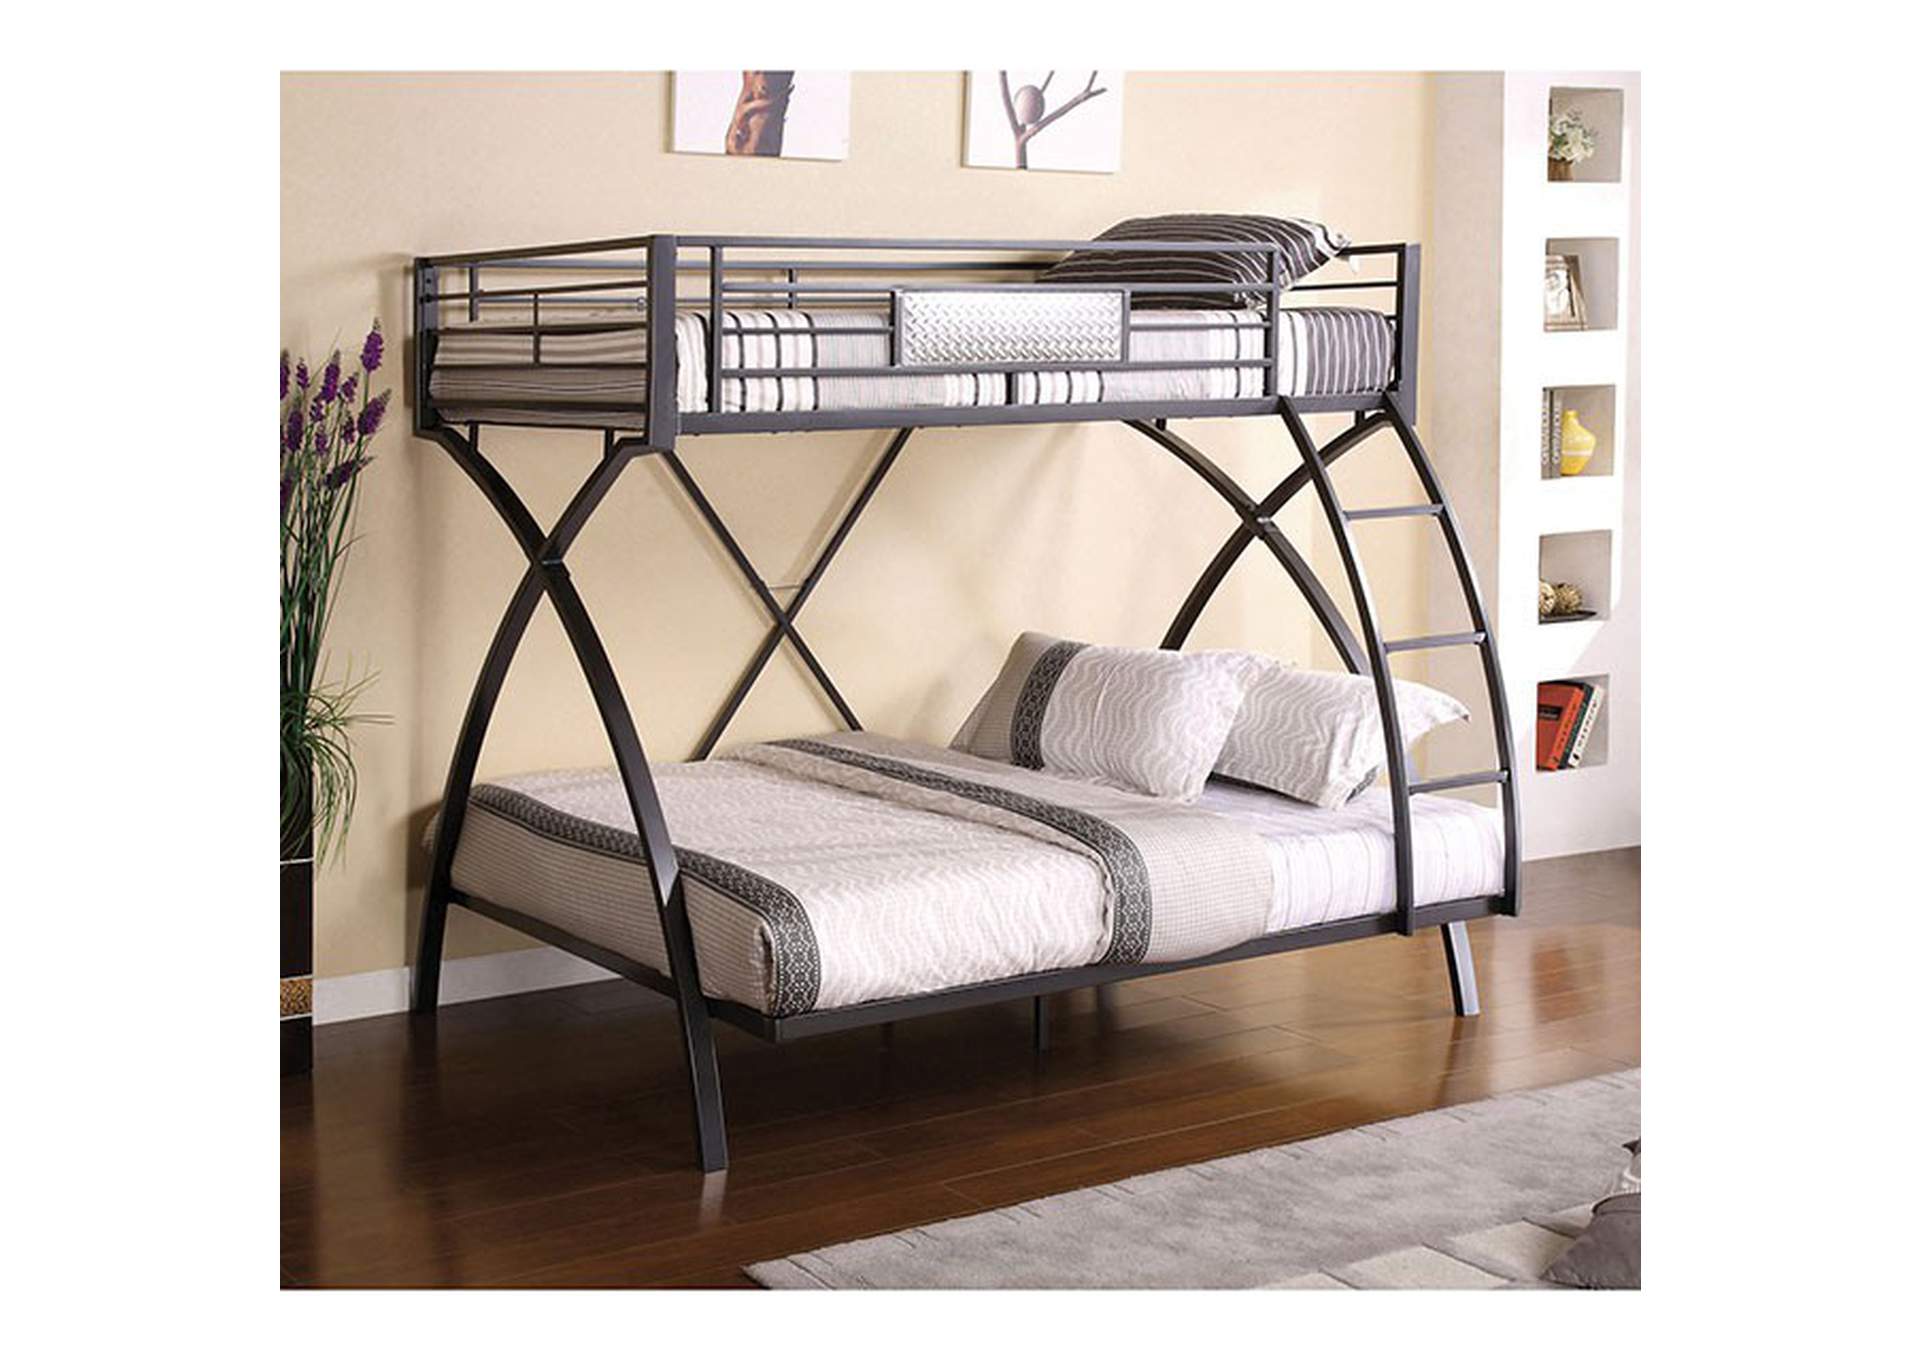 Apollo Gun Metal Twin/Full Bunk Bed,Furniture of America TX